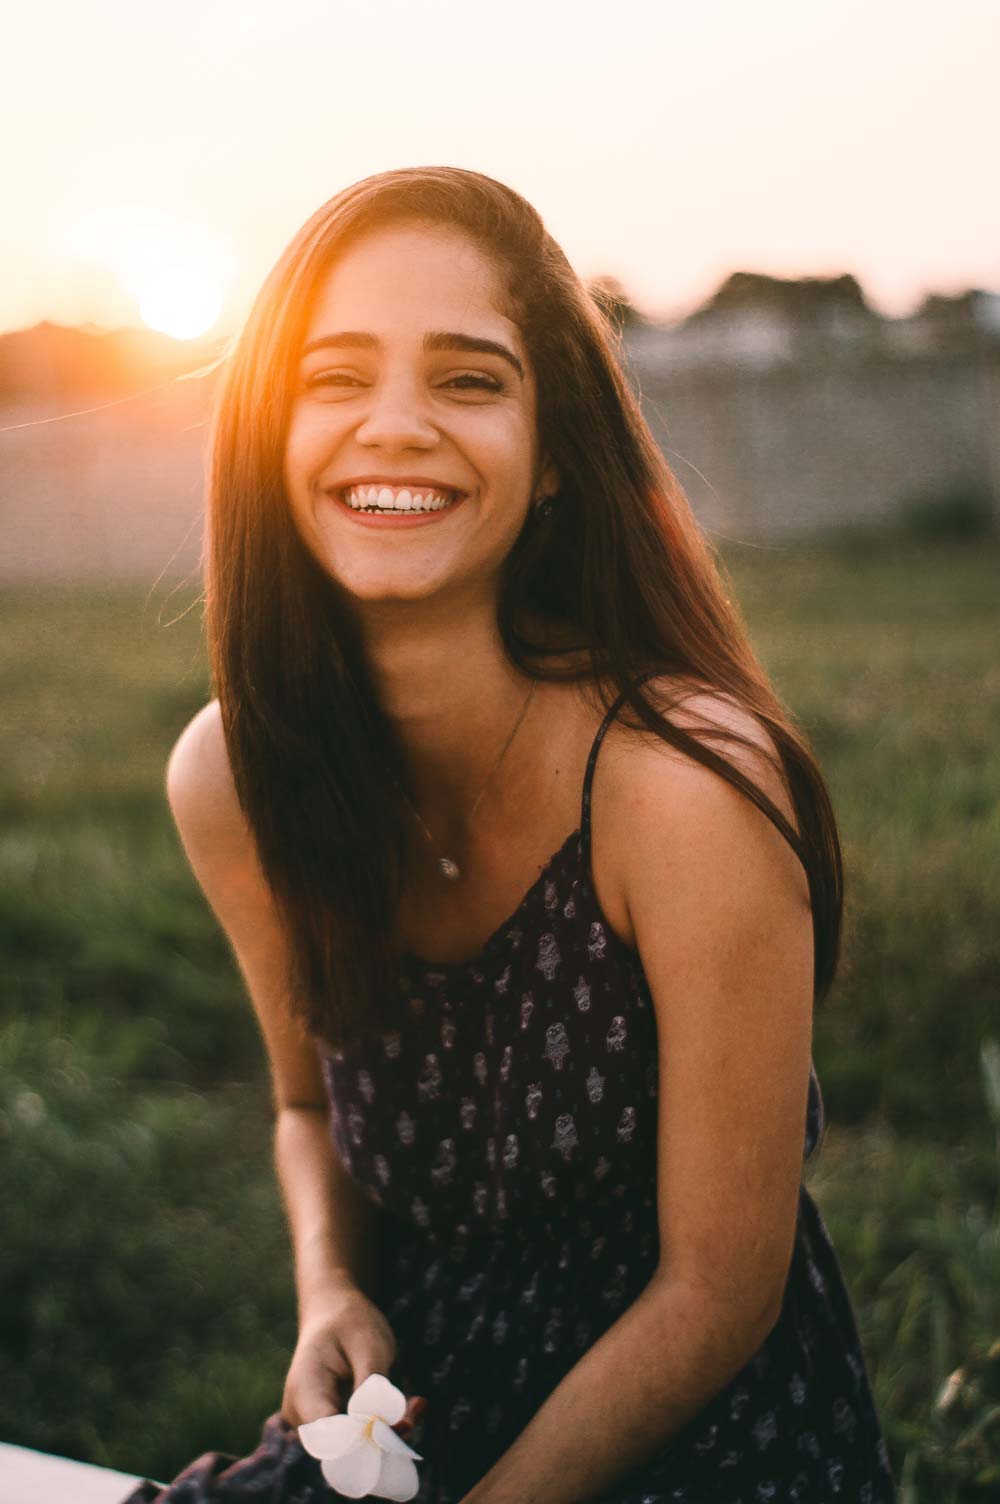 Femme en bonne santé naturelle avec un grand sourire grace aux bienfait du ginseng en 2020 elle utilise des compléments alimentaires bio